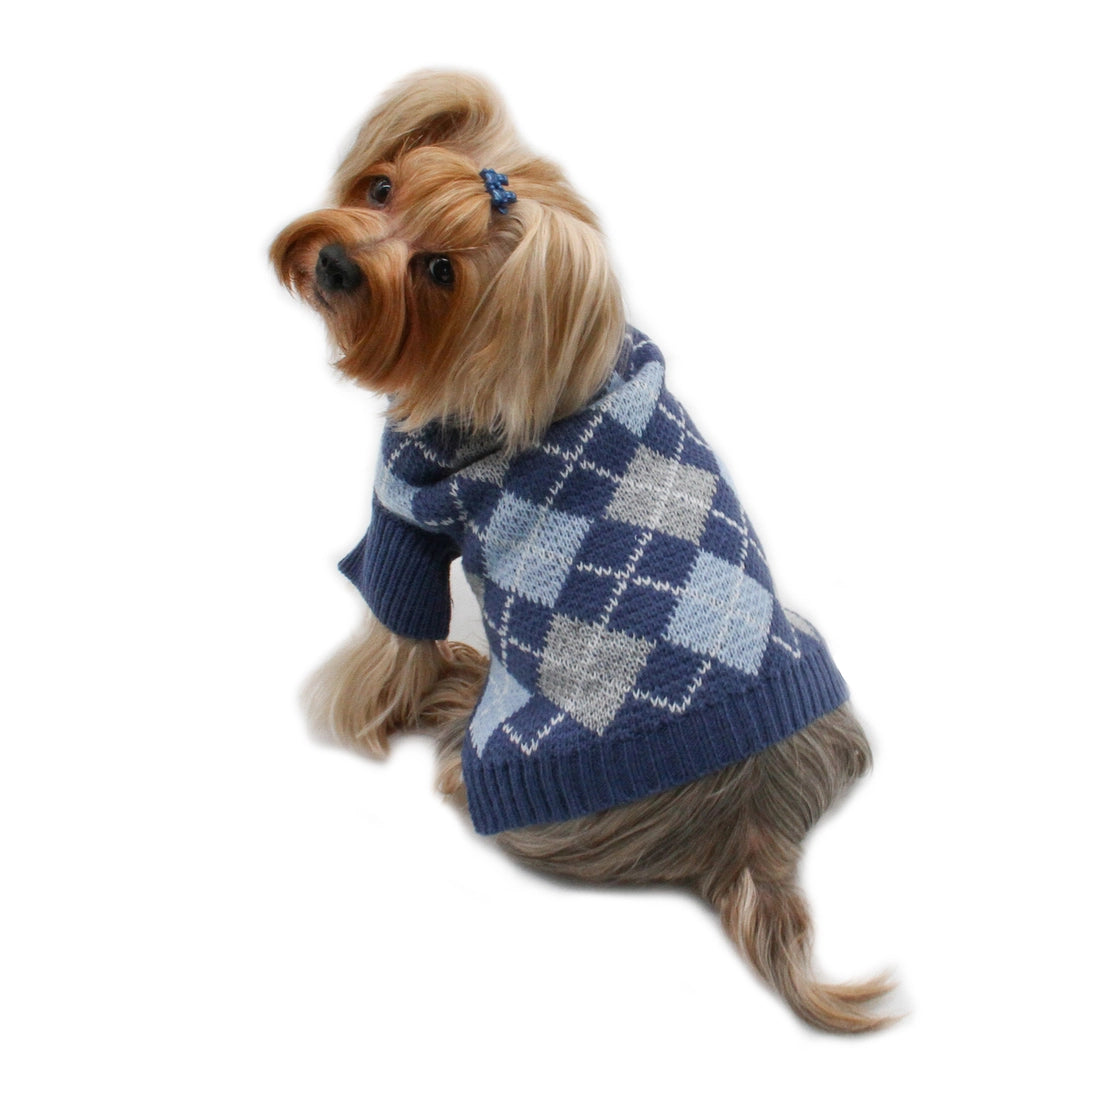 Klippo Argyle Turtleneck Dog Sweater - Navy Blue